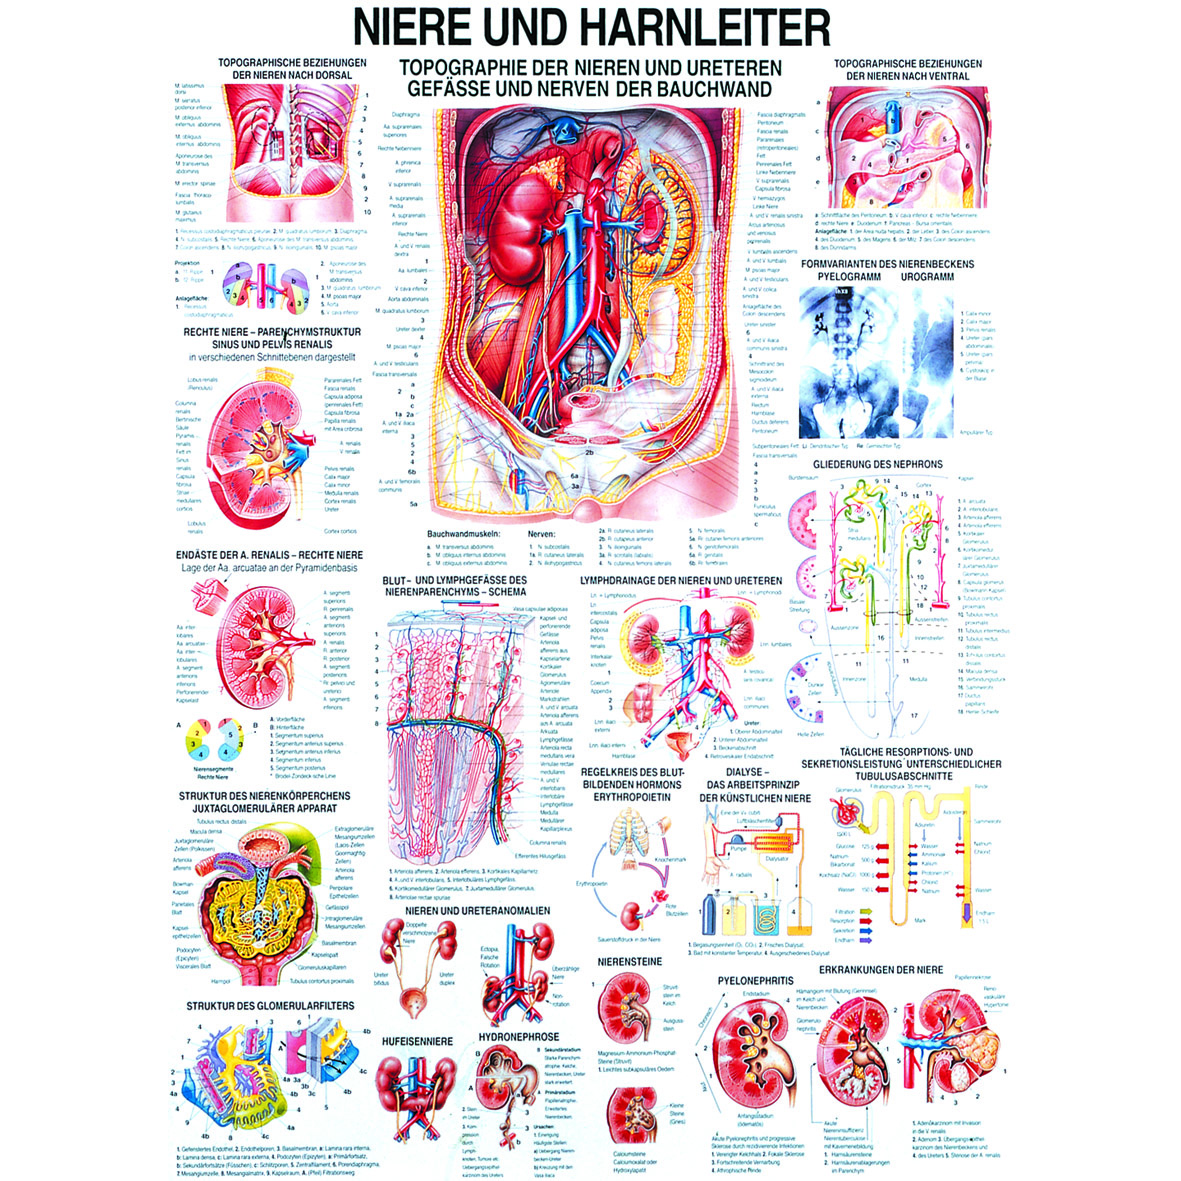 Anatomische Lehrtafel "Niere und Harnleiter"